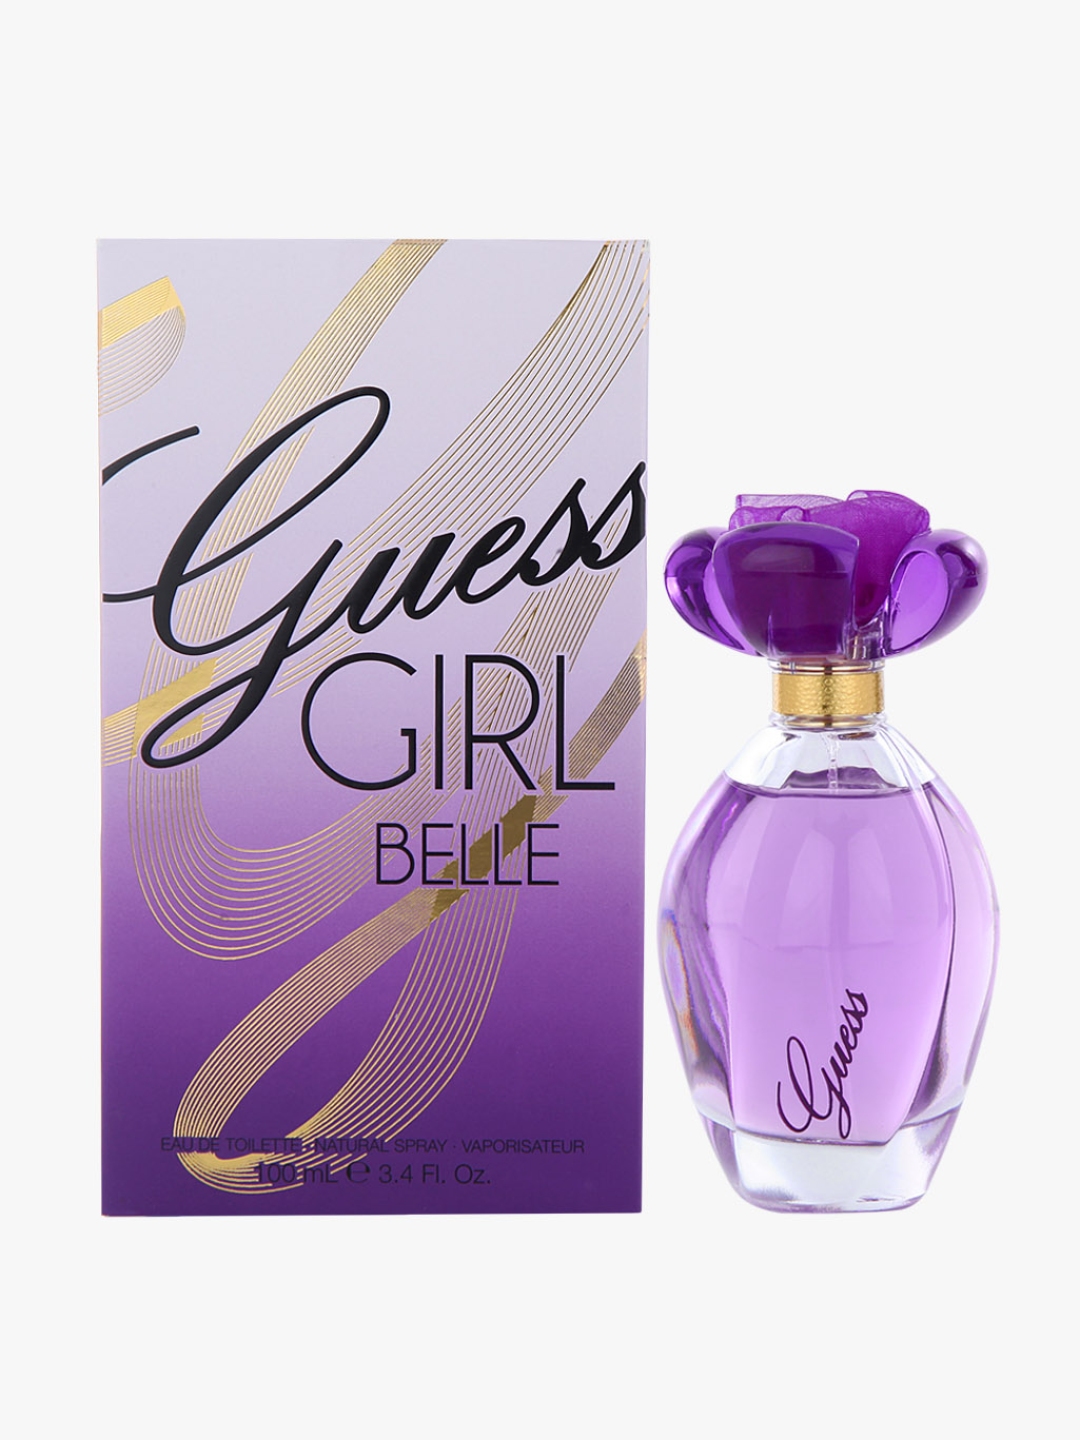 Buy Guess Girl Belle Eau De Toilette 100 Ml Perfume For Women